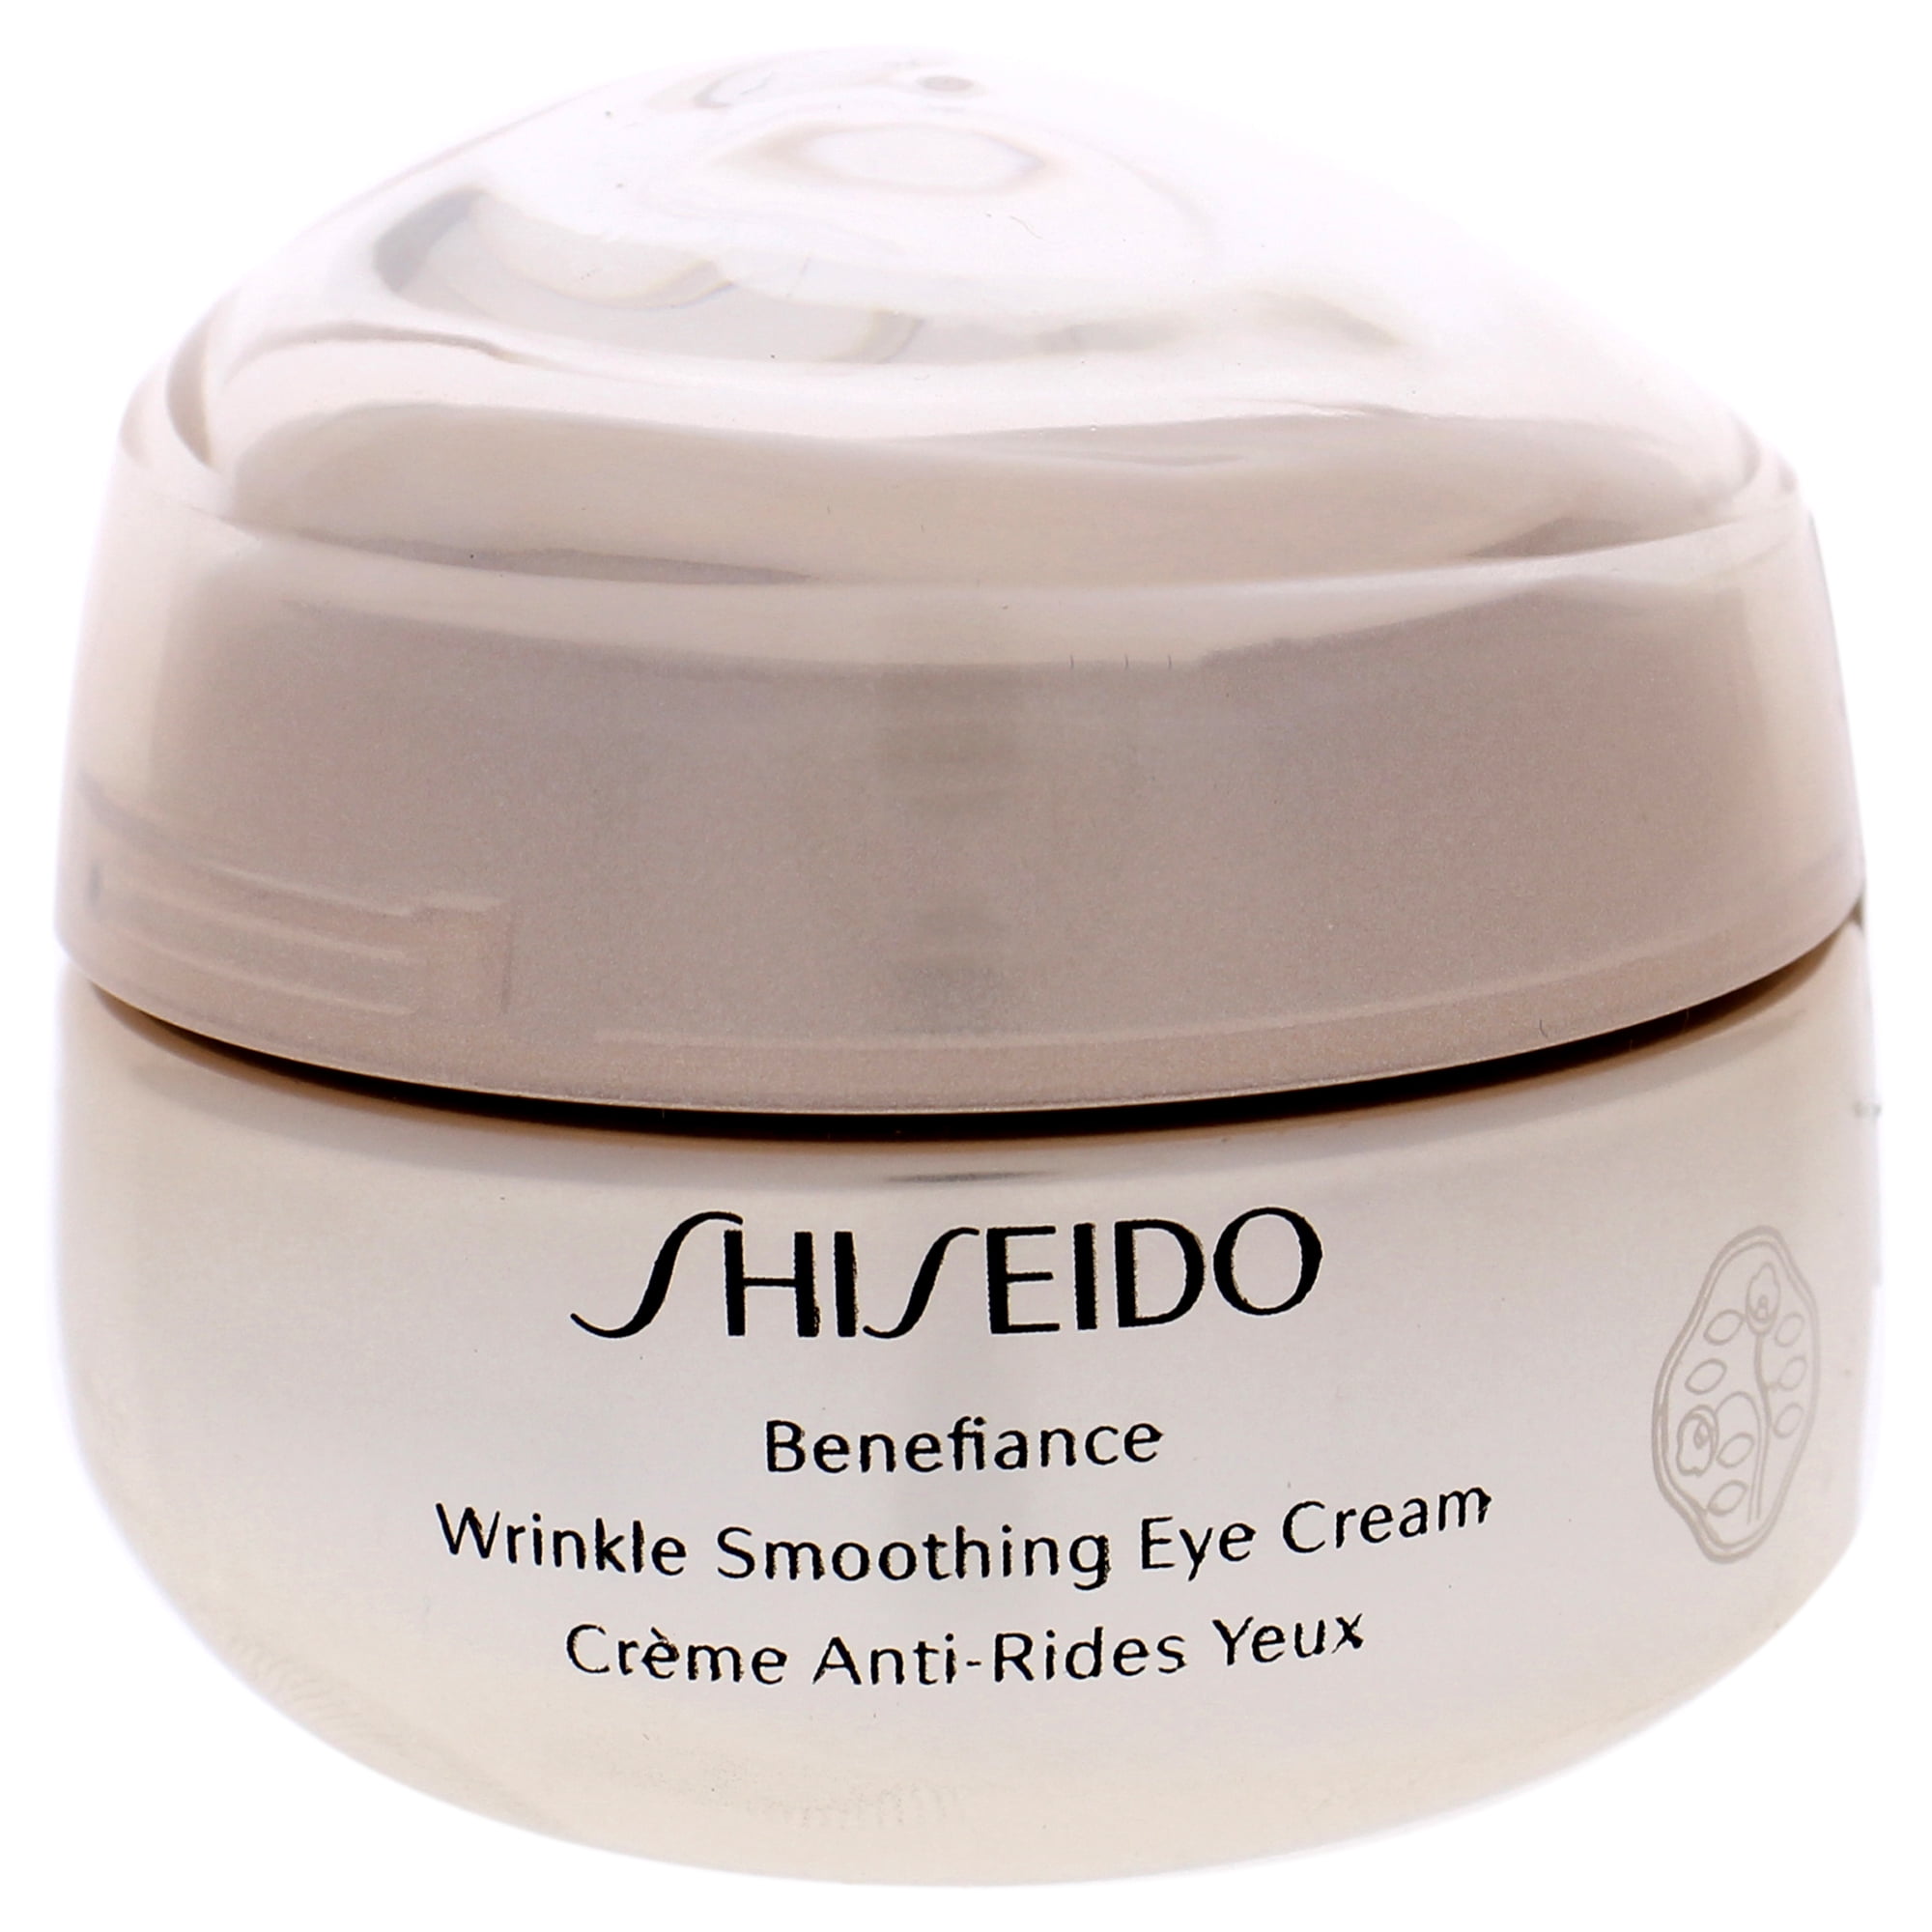 Shiseido Benefiance Eye Cream. Shiseido // крем Benefiance Wrinkle Smoothing Eye Cream 15ml. Shiseido Wrinkle Smoothing Cream. Корейский косметика Eye Cream Byaning.